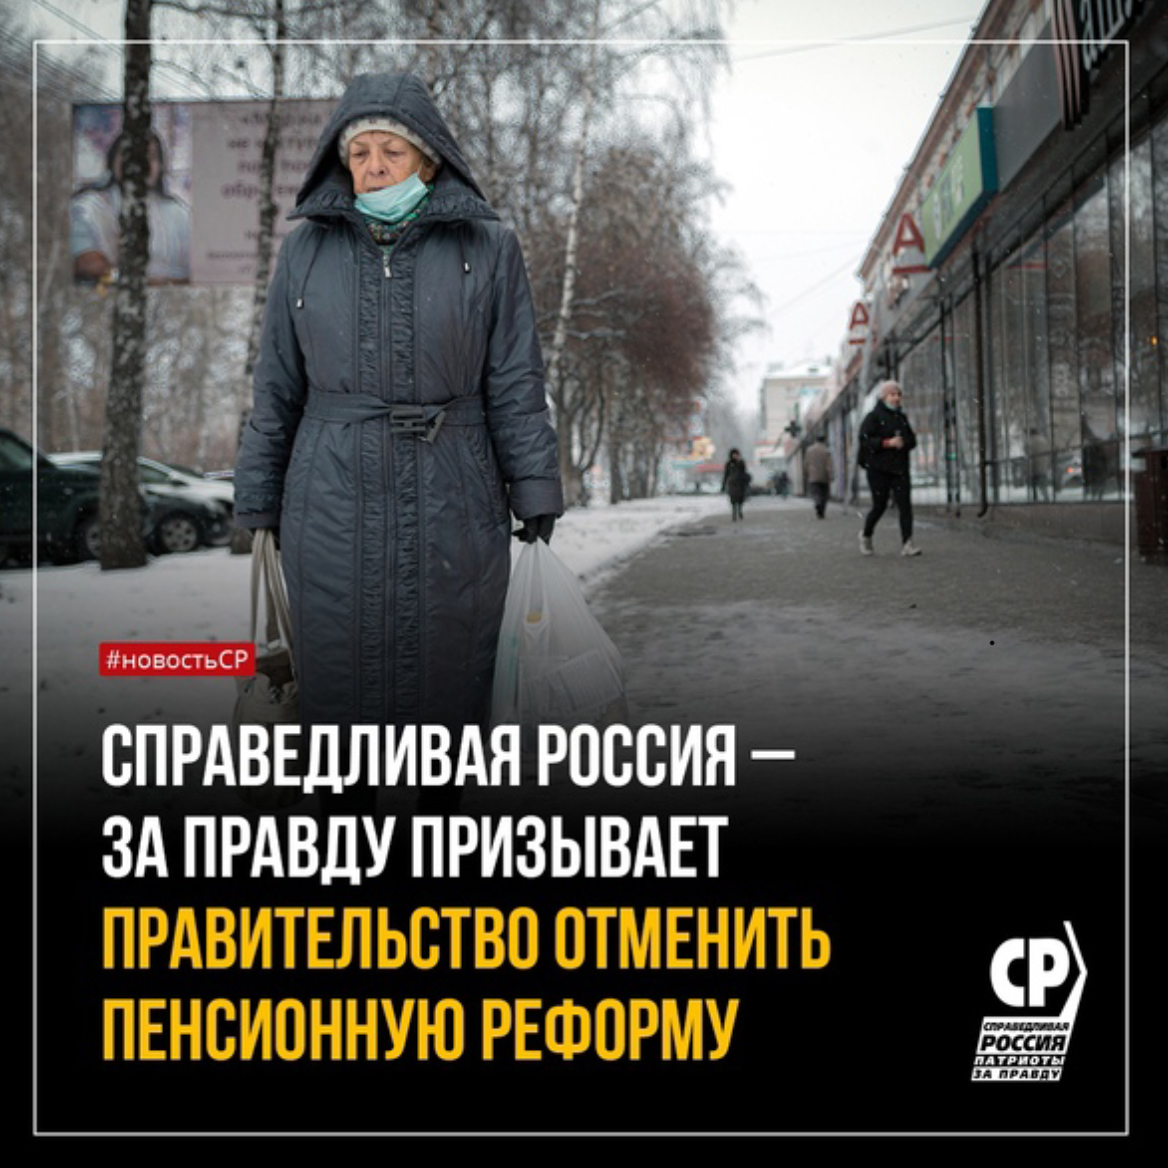 Отмена пенсионного возраста в россии